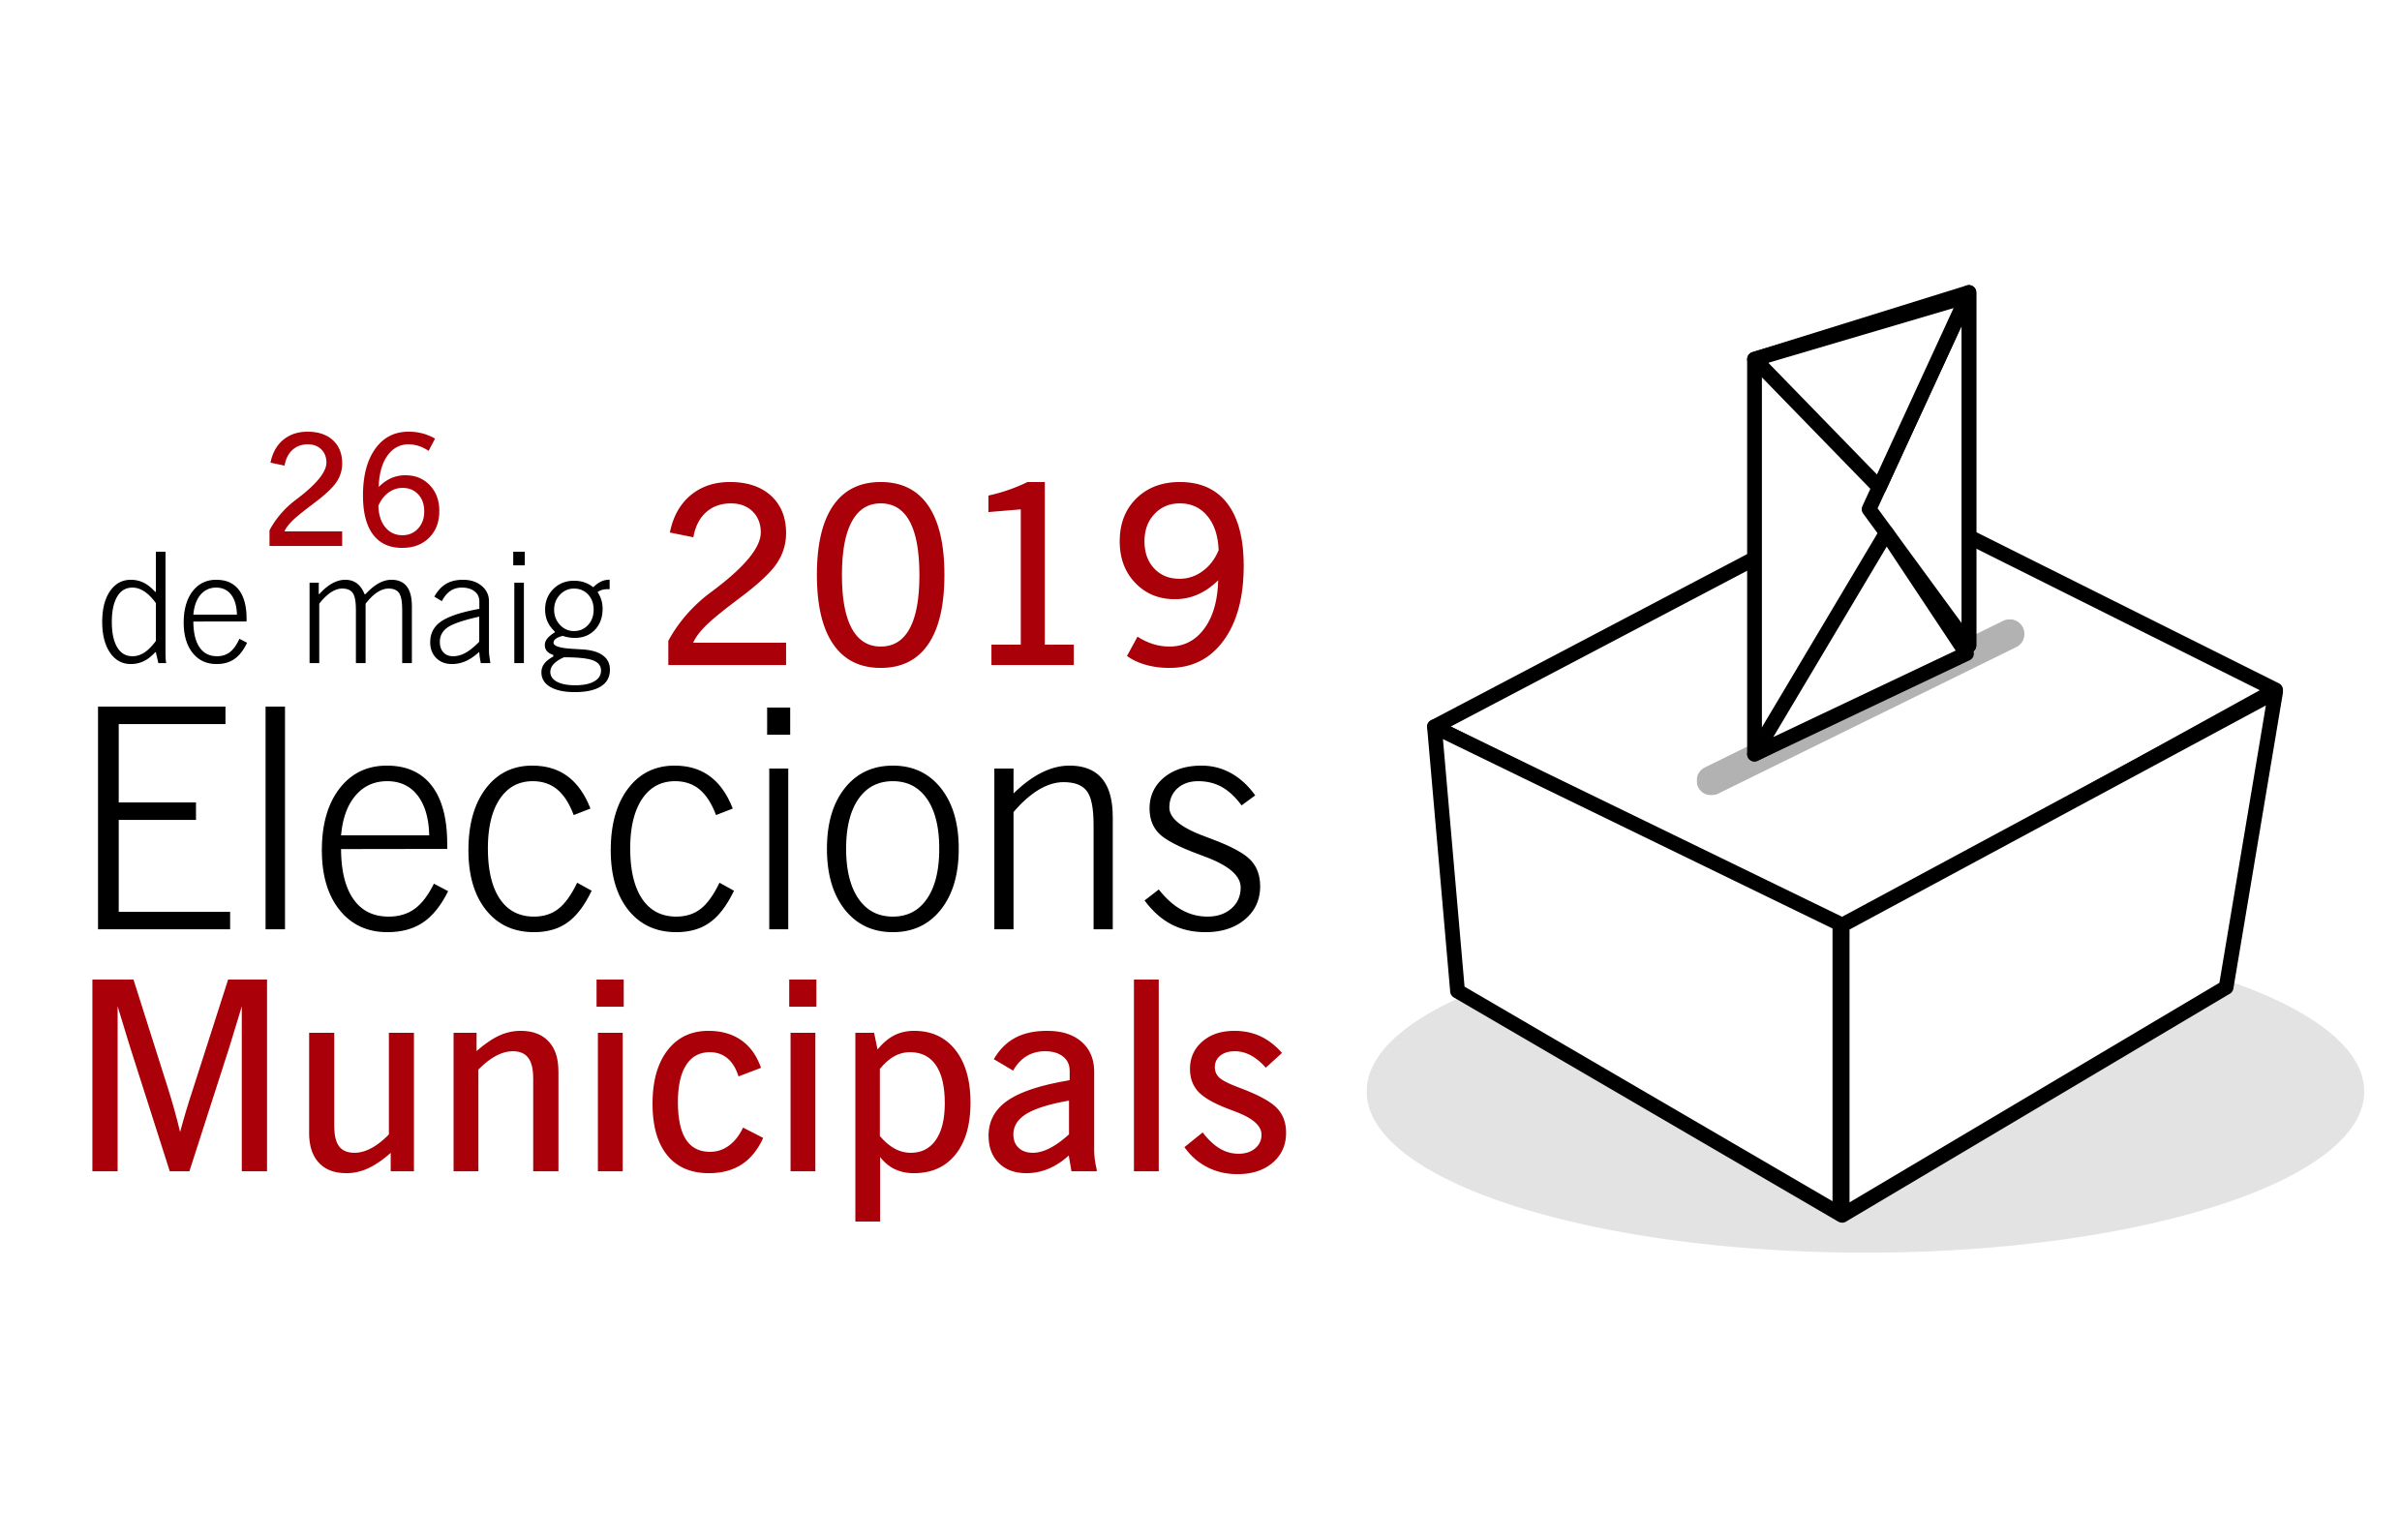 Vuit candidatures participaran a les eleccions municipals